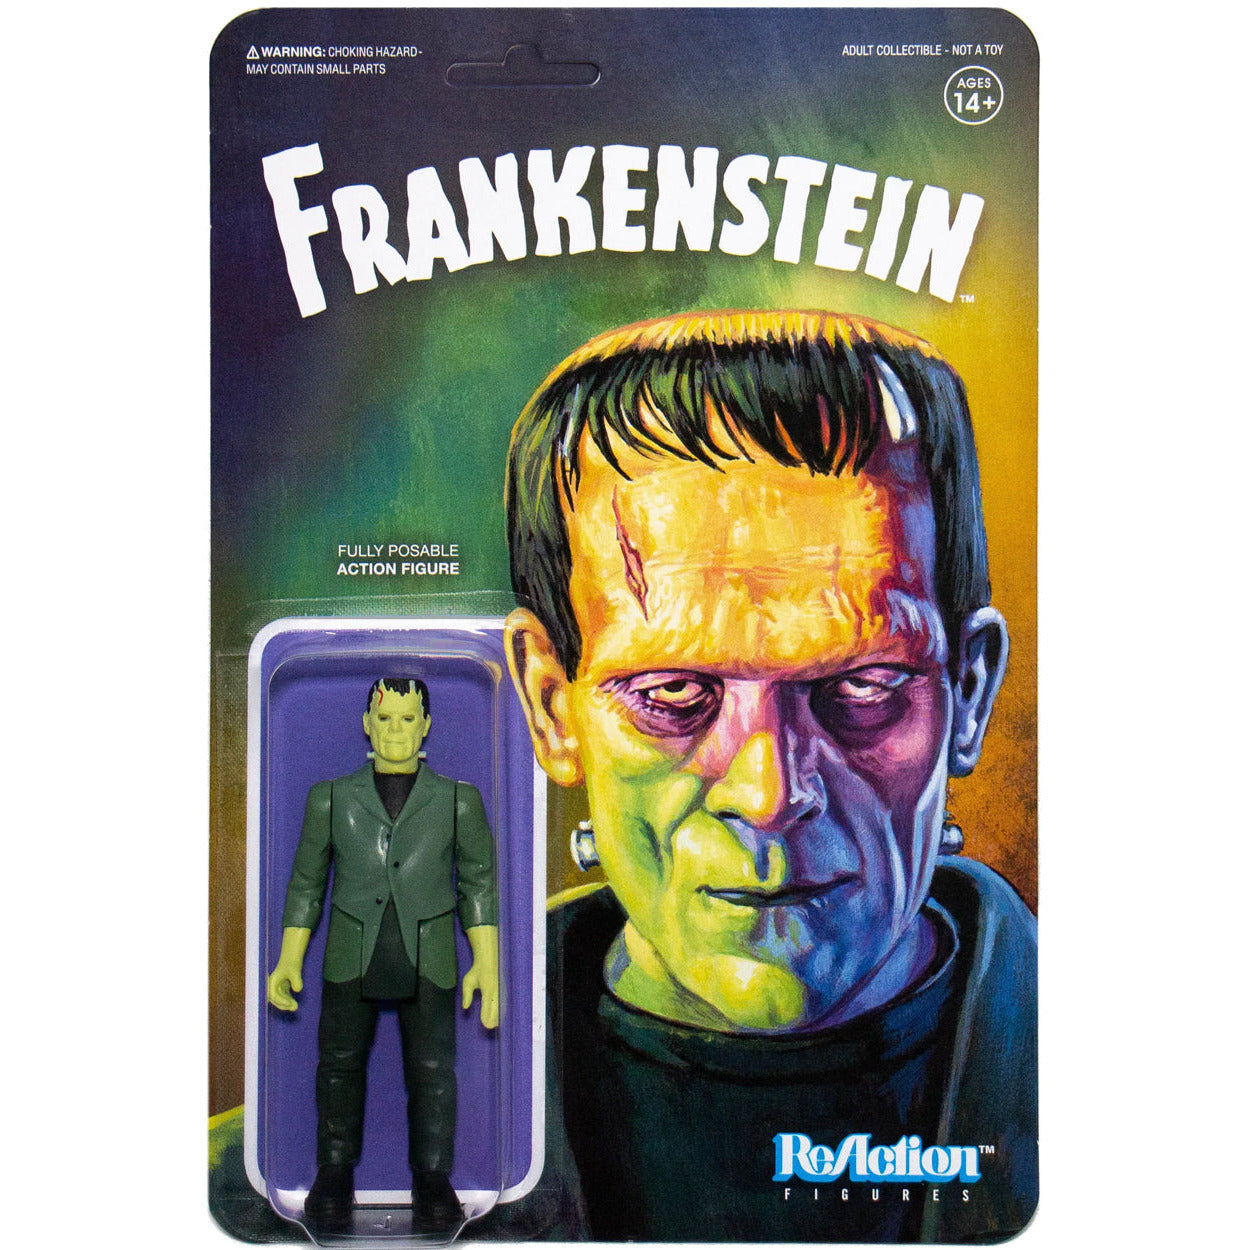 Super 7 Reaction Universal Monsters Frankenstein figure in stock